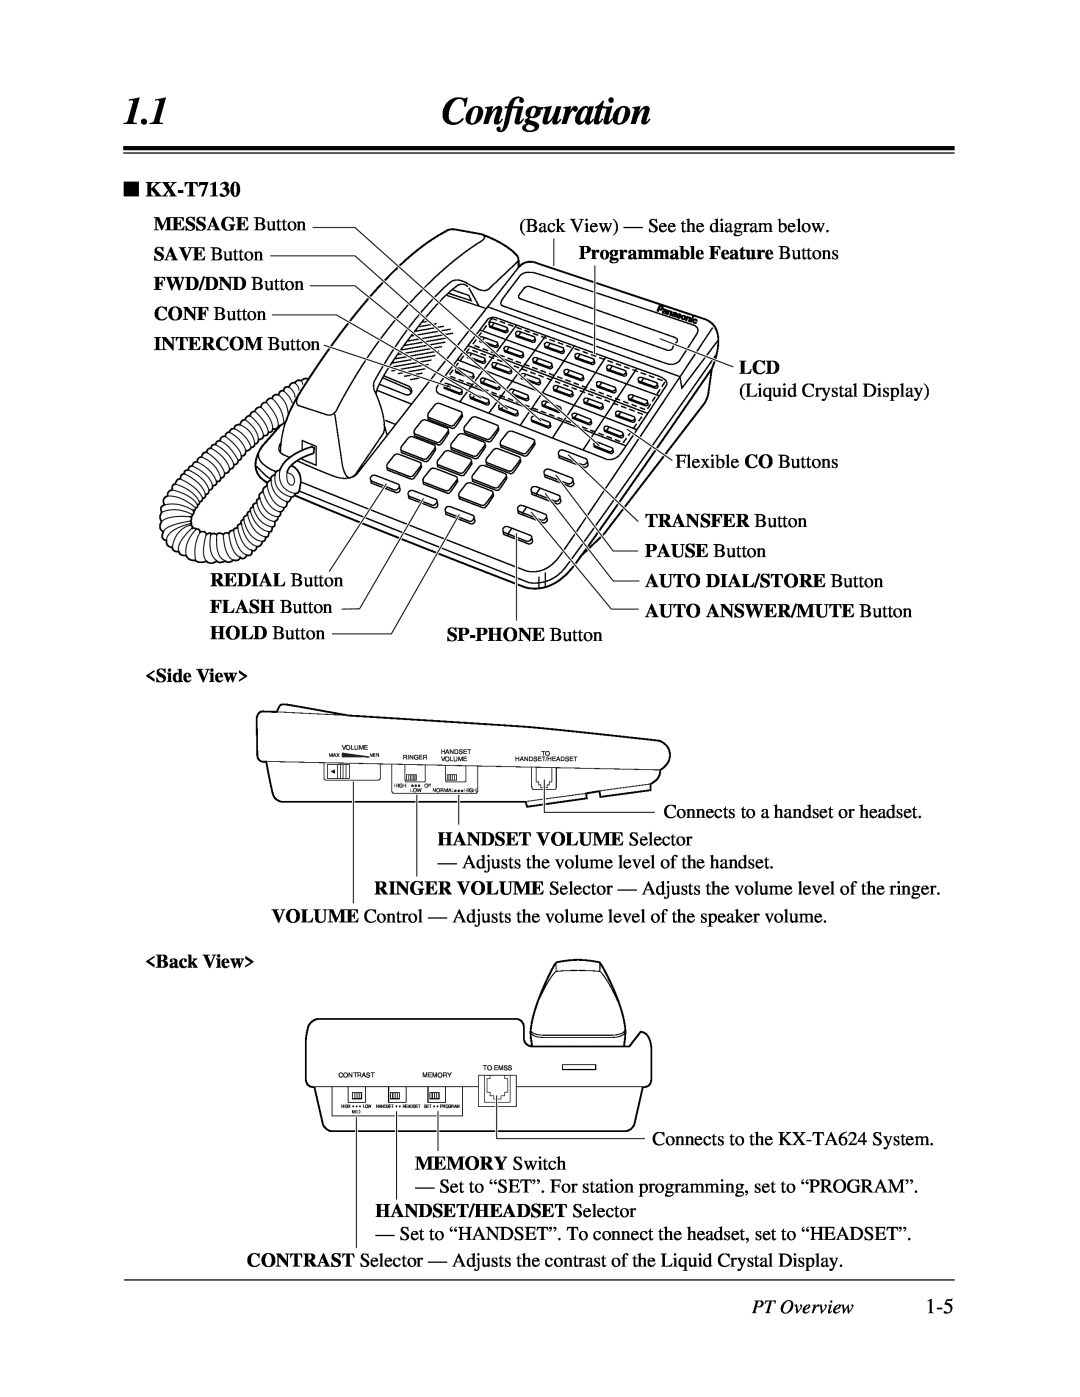 Panasonic KX-TA624 user manual KX-T7130, 1.1Conﬁguration, PT Overview 